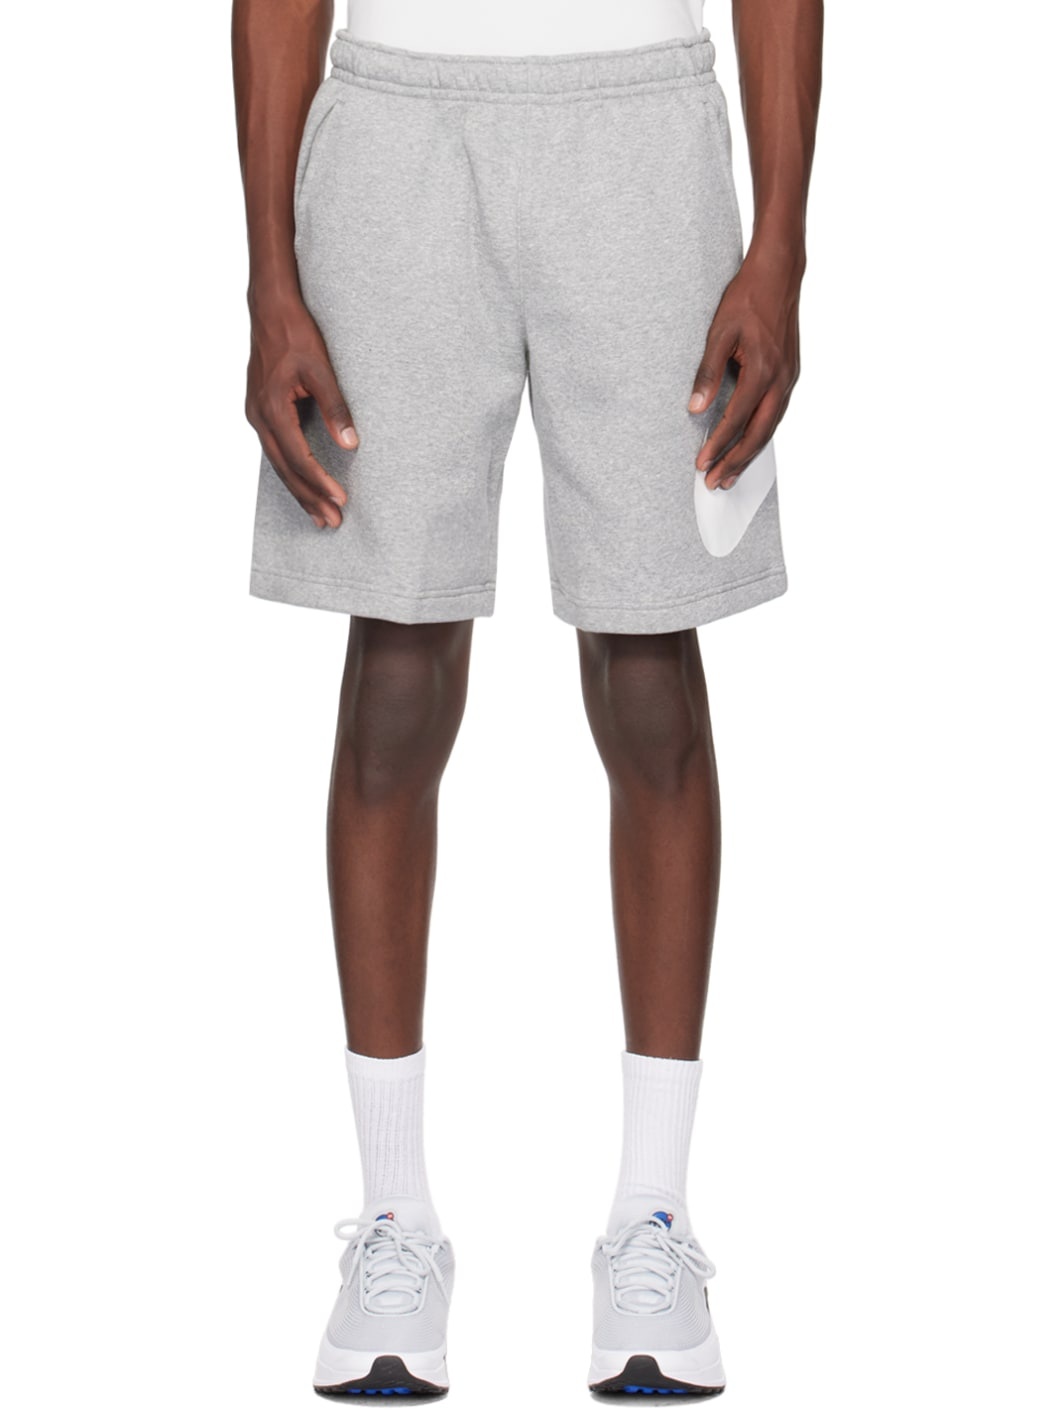 Gray Printed Shorts - 1